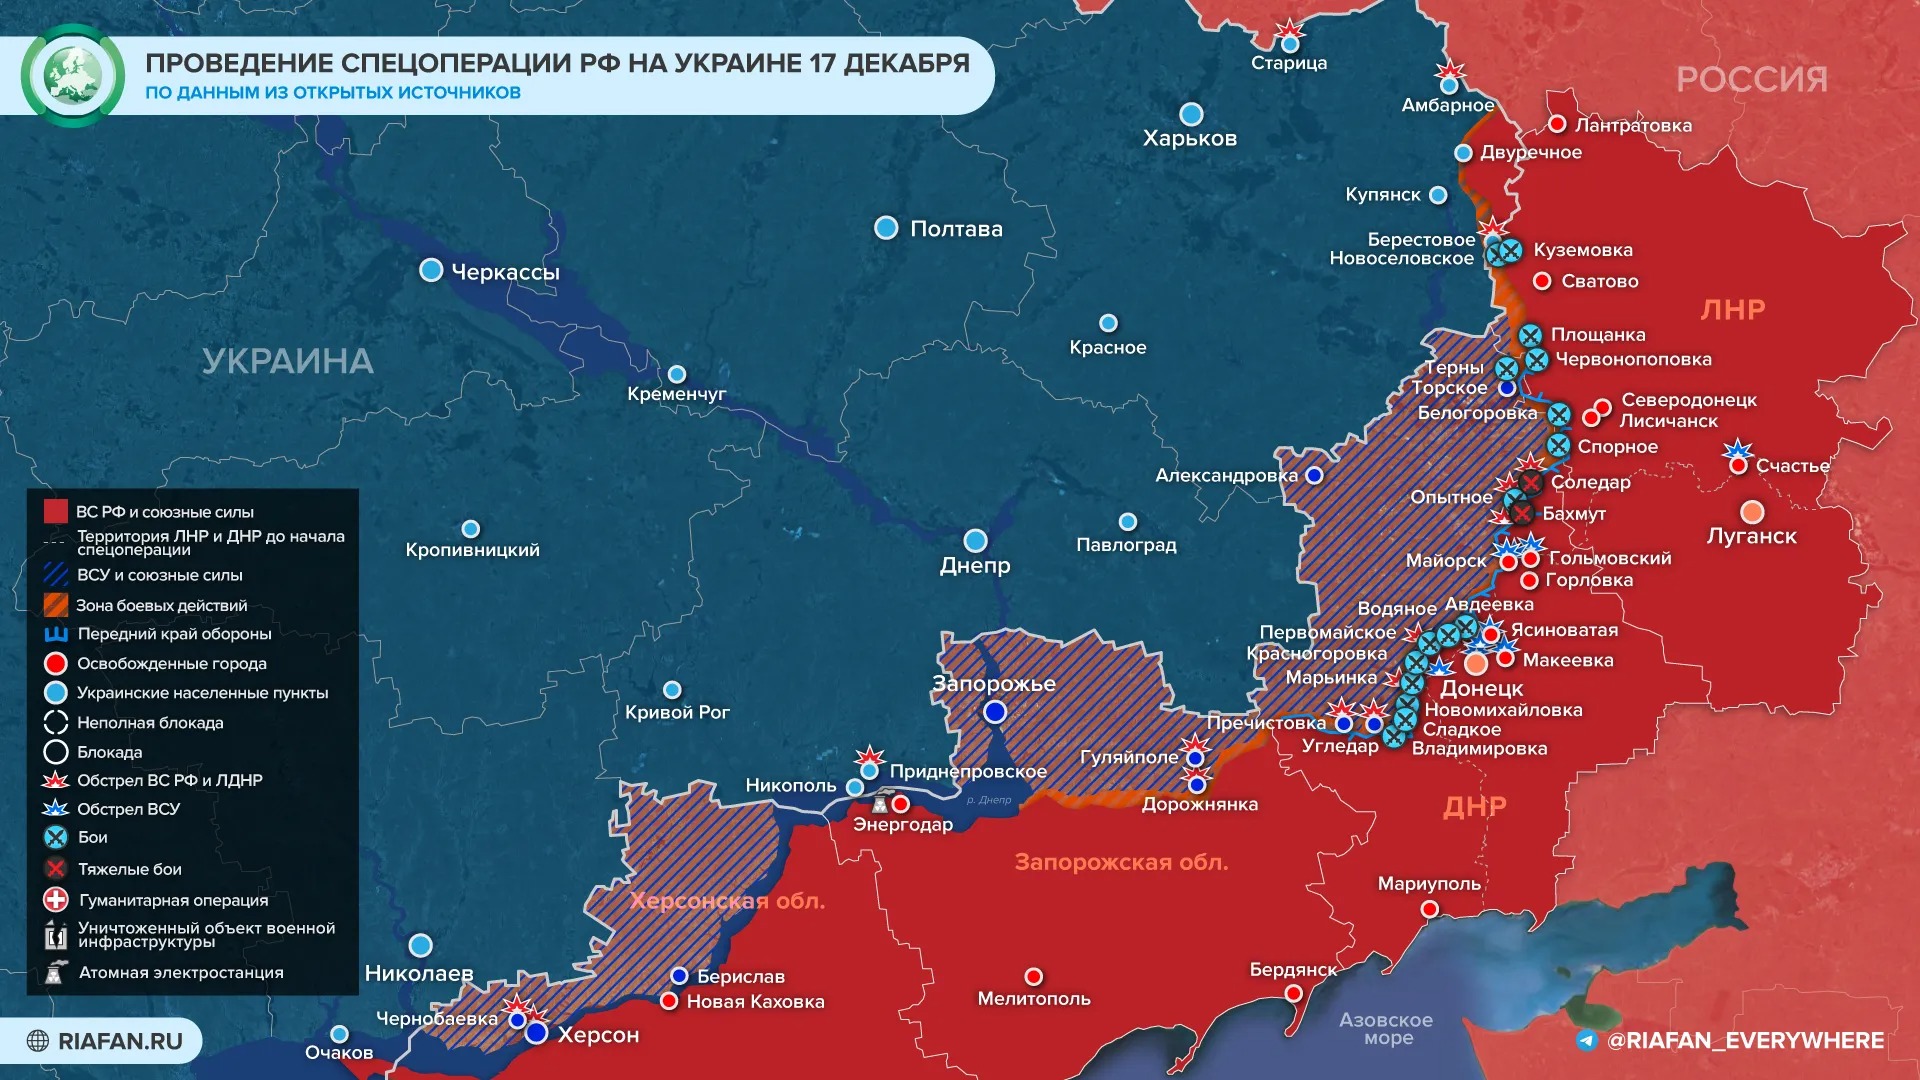 Мощные удары по энергообъектам Украины: последние новости военной спецоперации на Украине на сегодня 18 декабря 2022 года